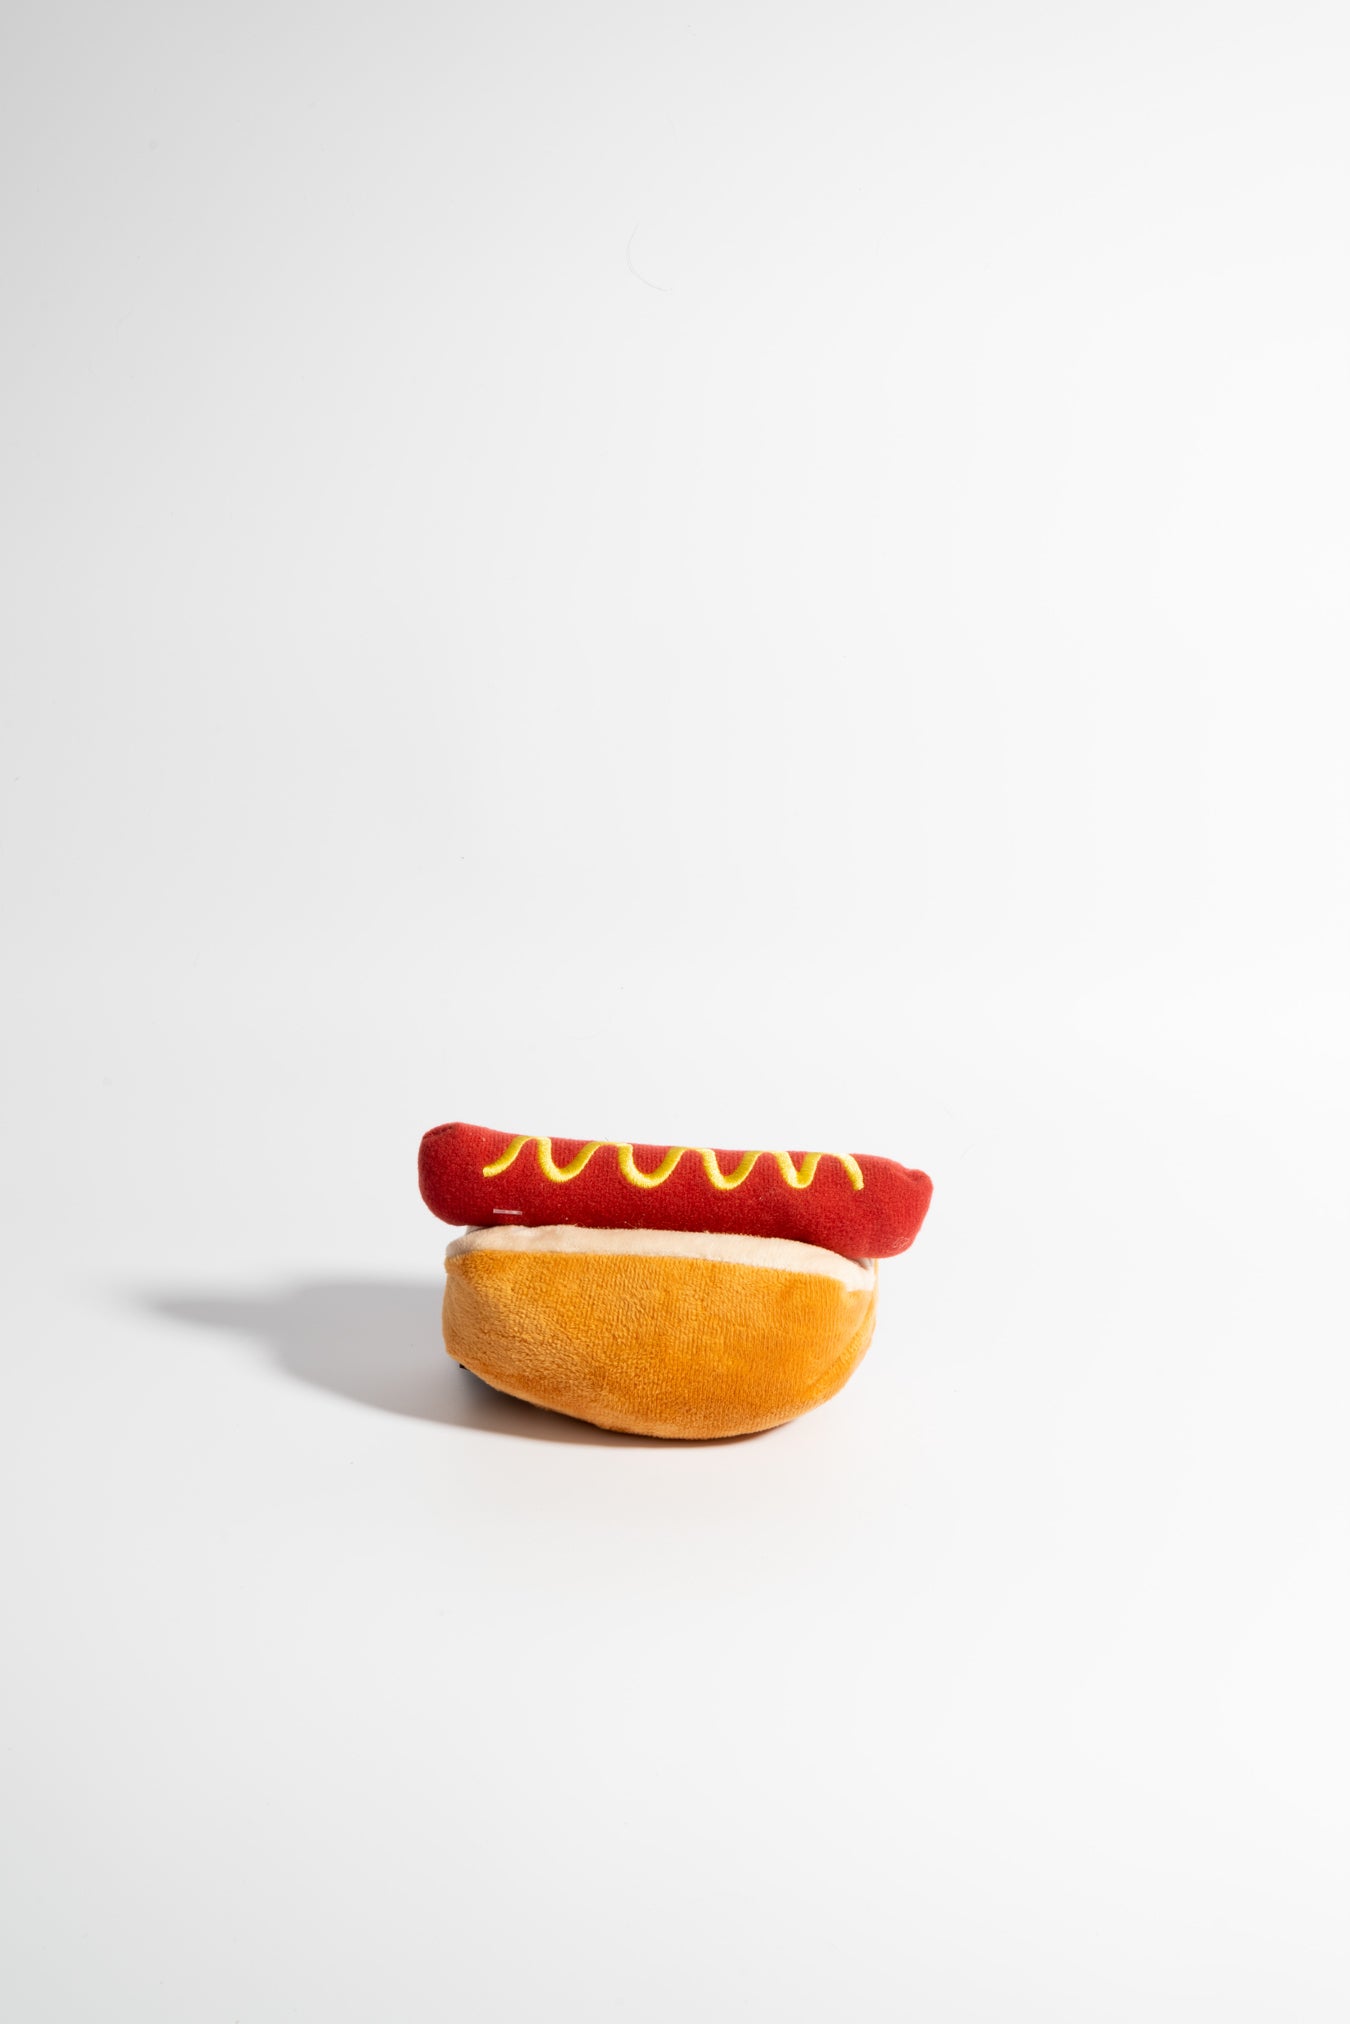 Hotdog toy